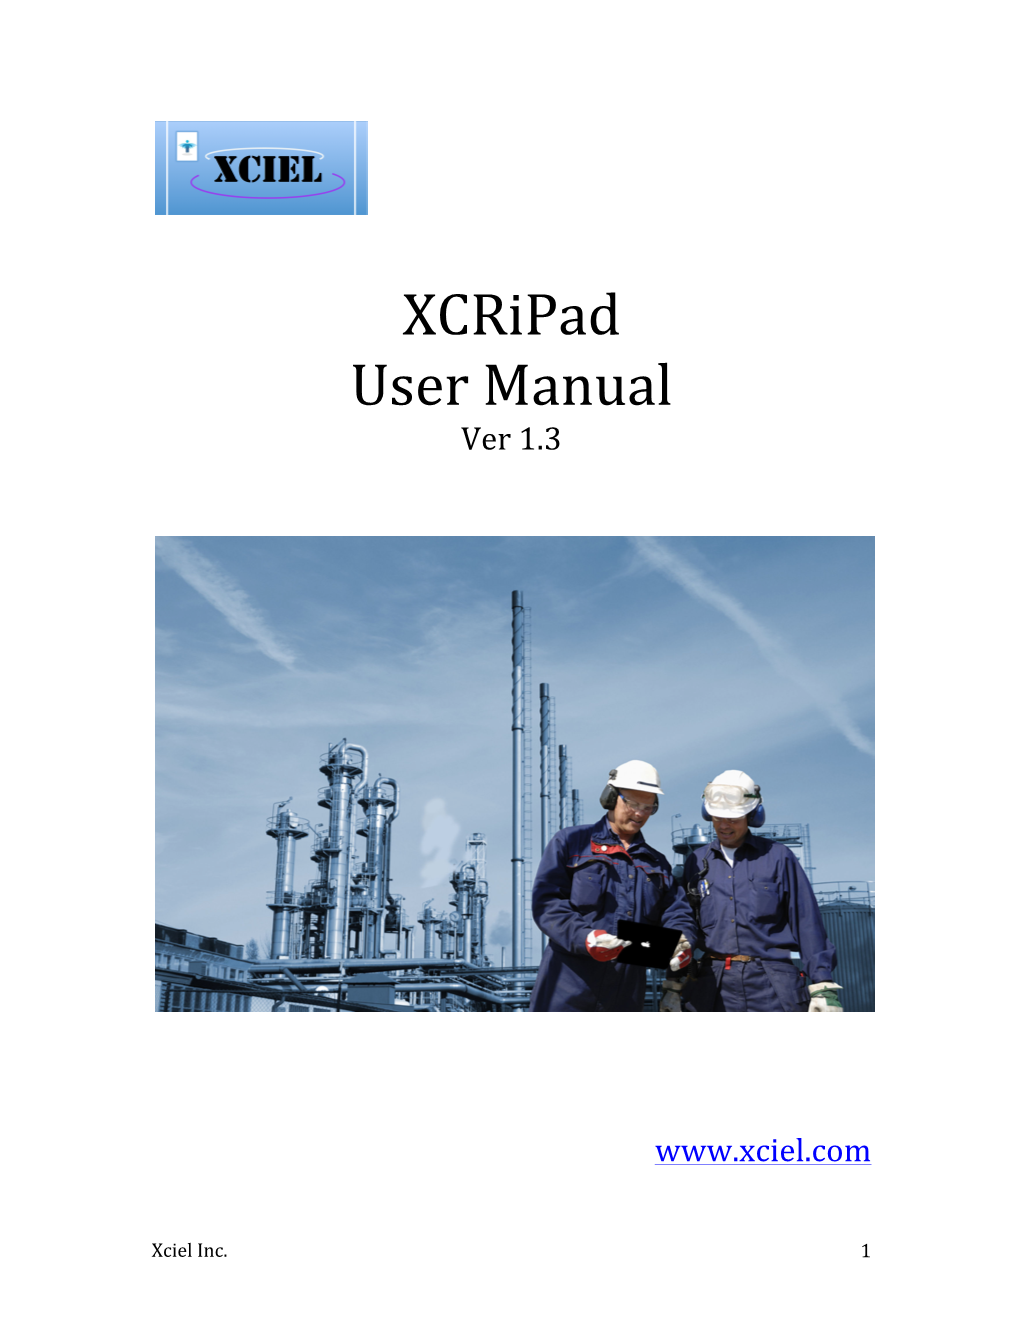 Xcripad User Manual Ver 1.3